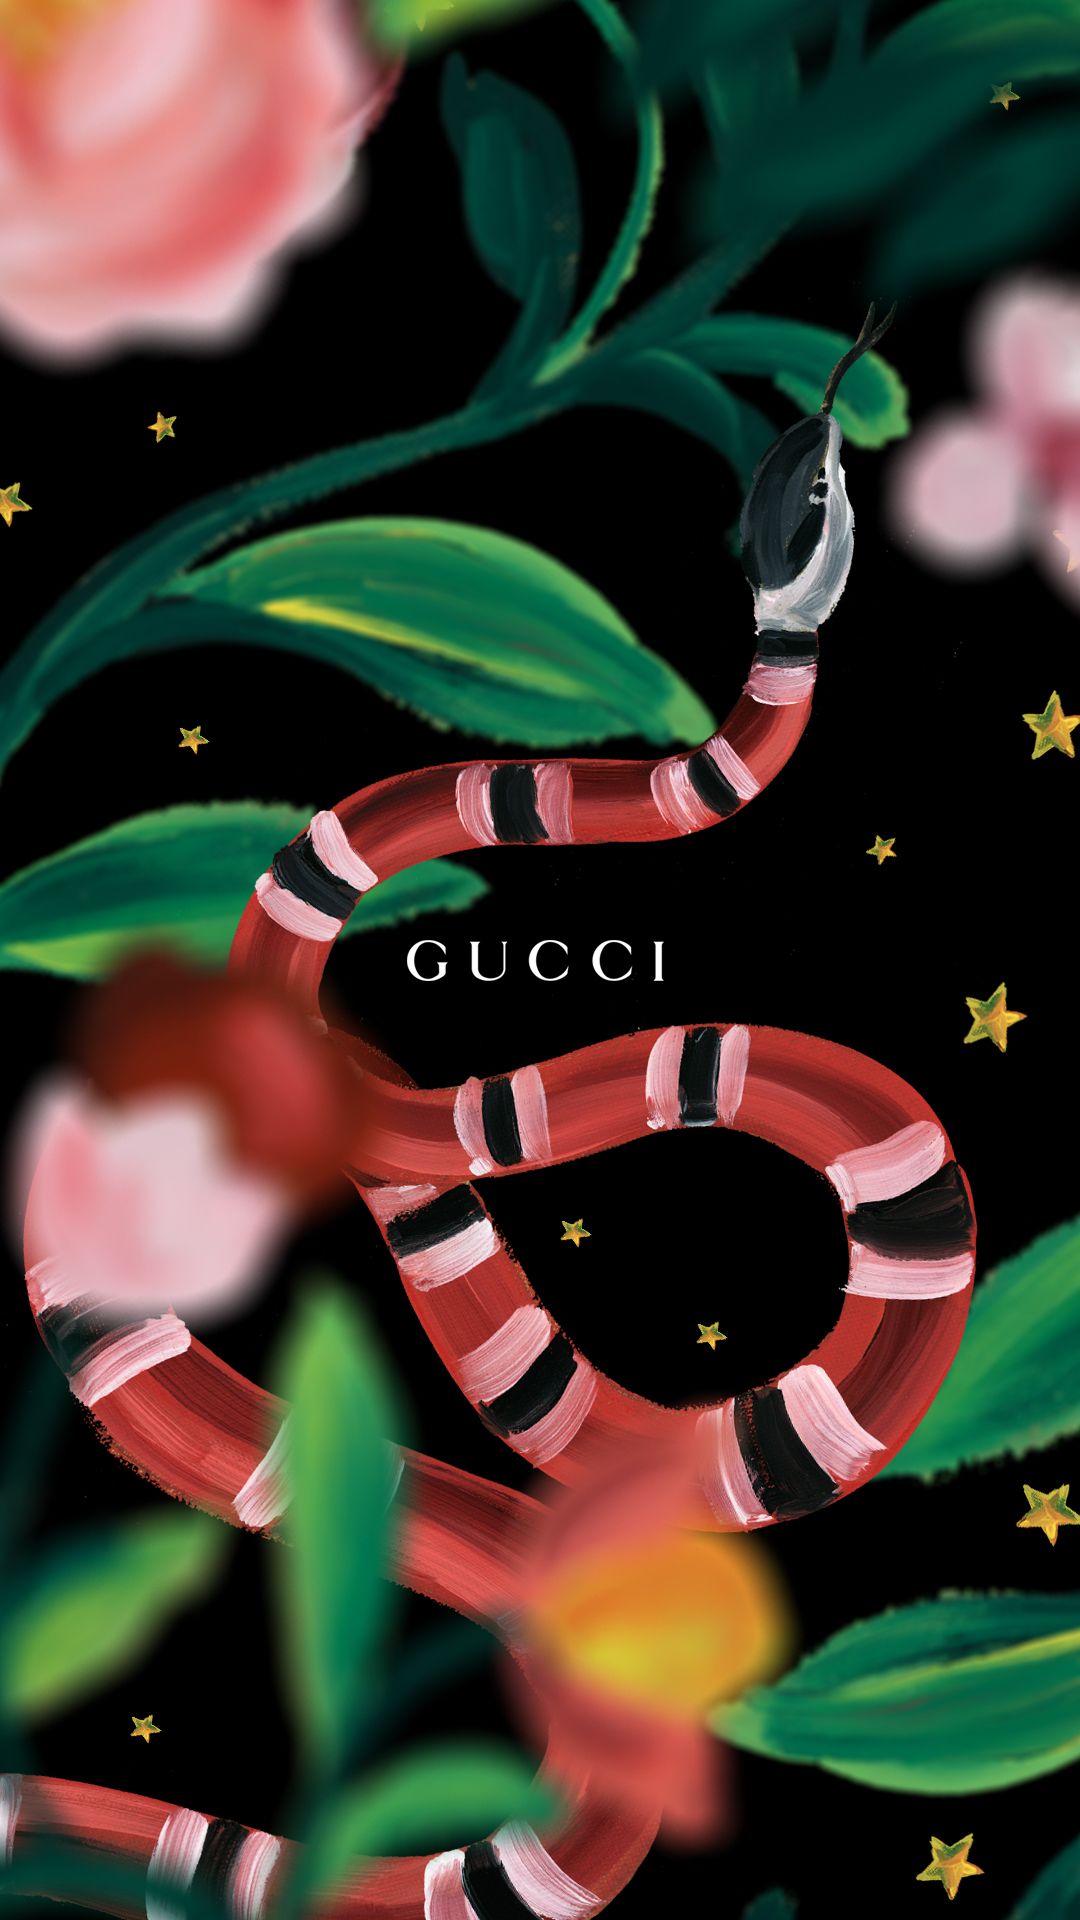 Gucci Wallpaper iphone